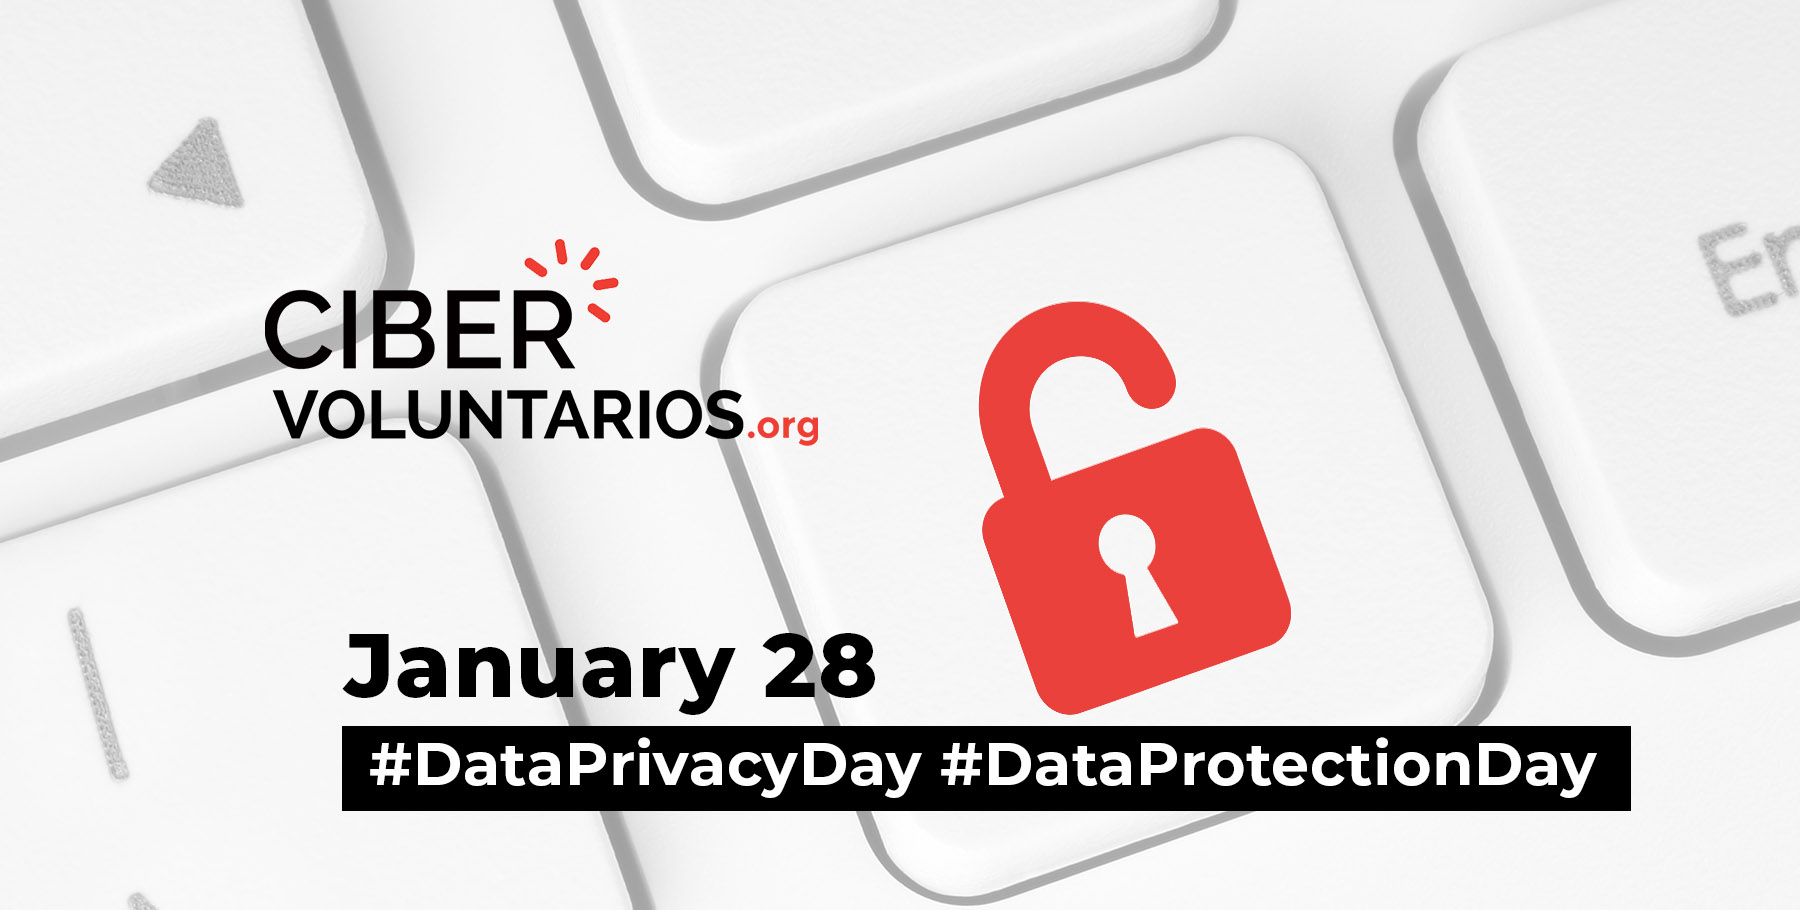 Fundación Cibervoluntarios' global alliances to celebrate Data Privacy Day